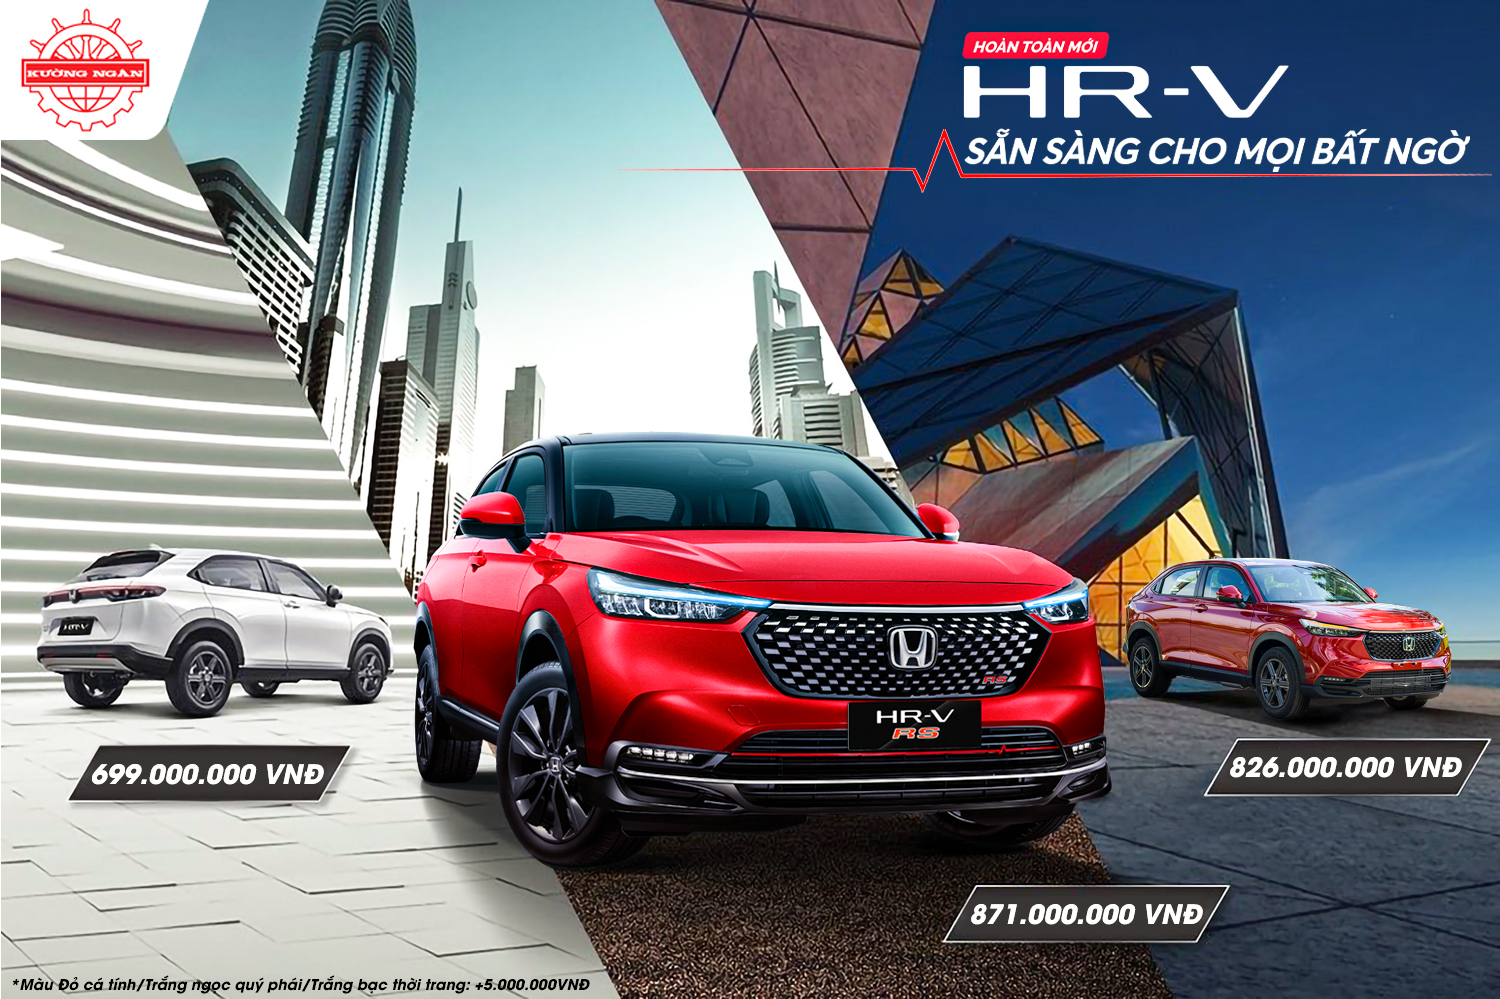 Honda HR-V là sản phẩm đầu tiên của Honda bán tại Việt Nam mang thiết kế mới, cá tính, sành điệu và trẻ trung